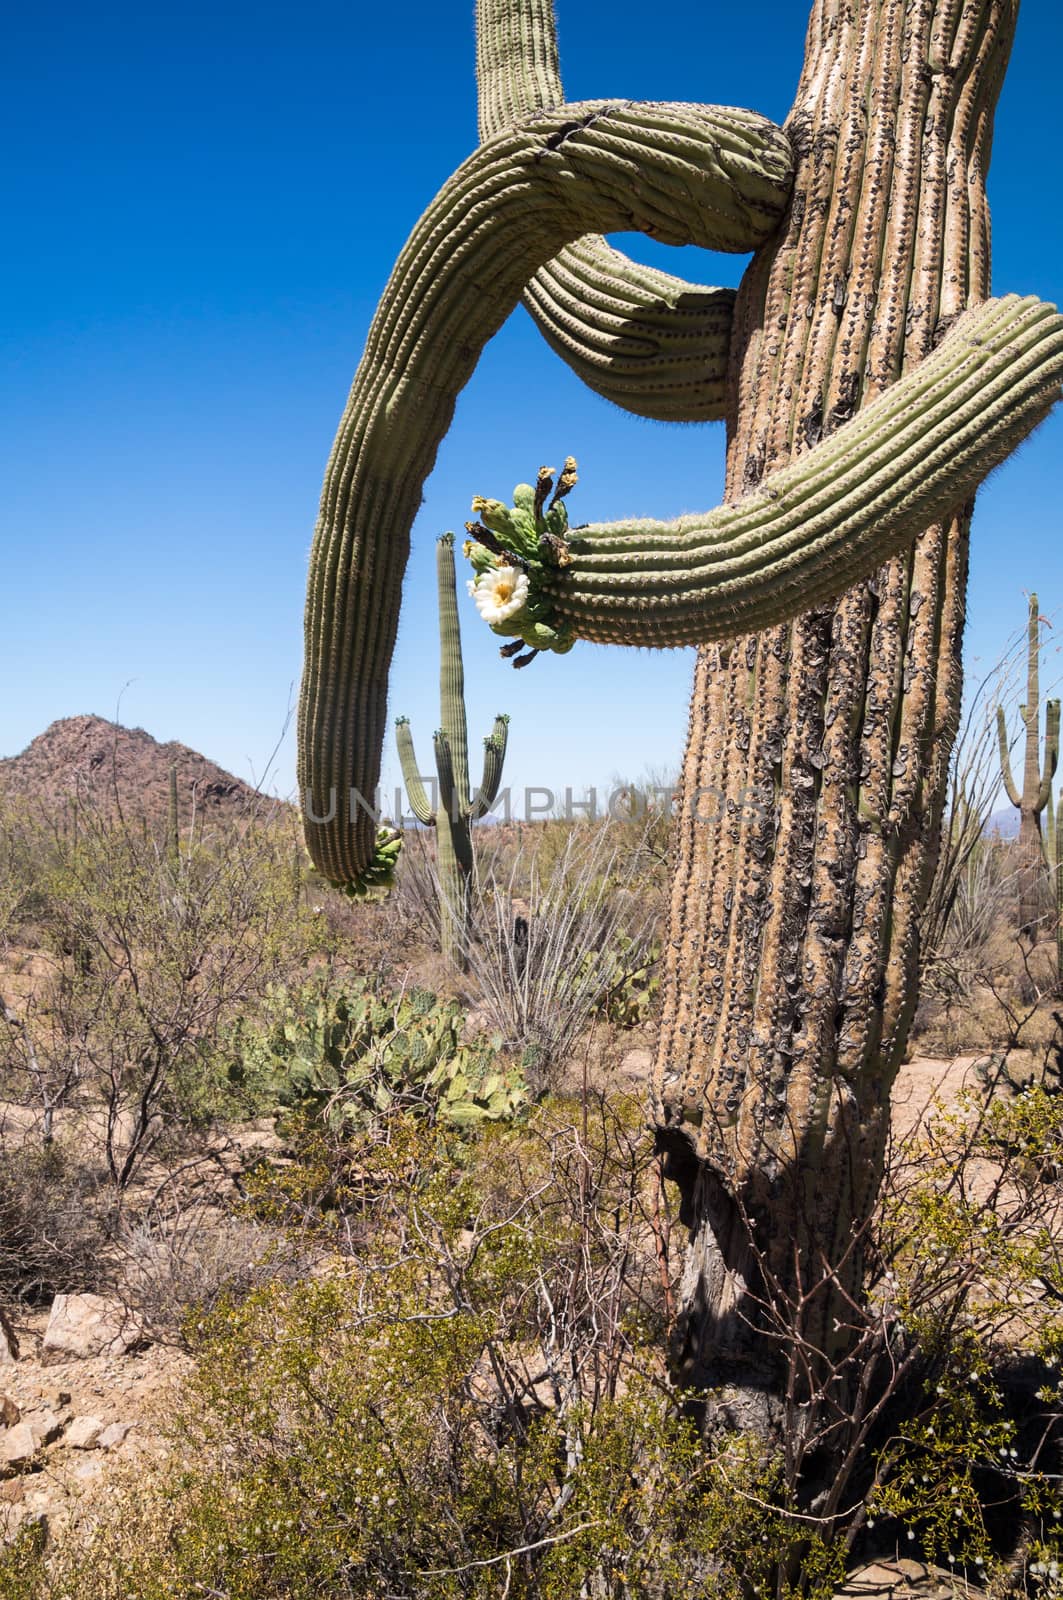 Details of saguaro cactus